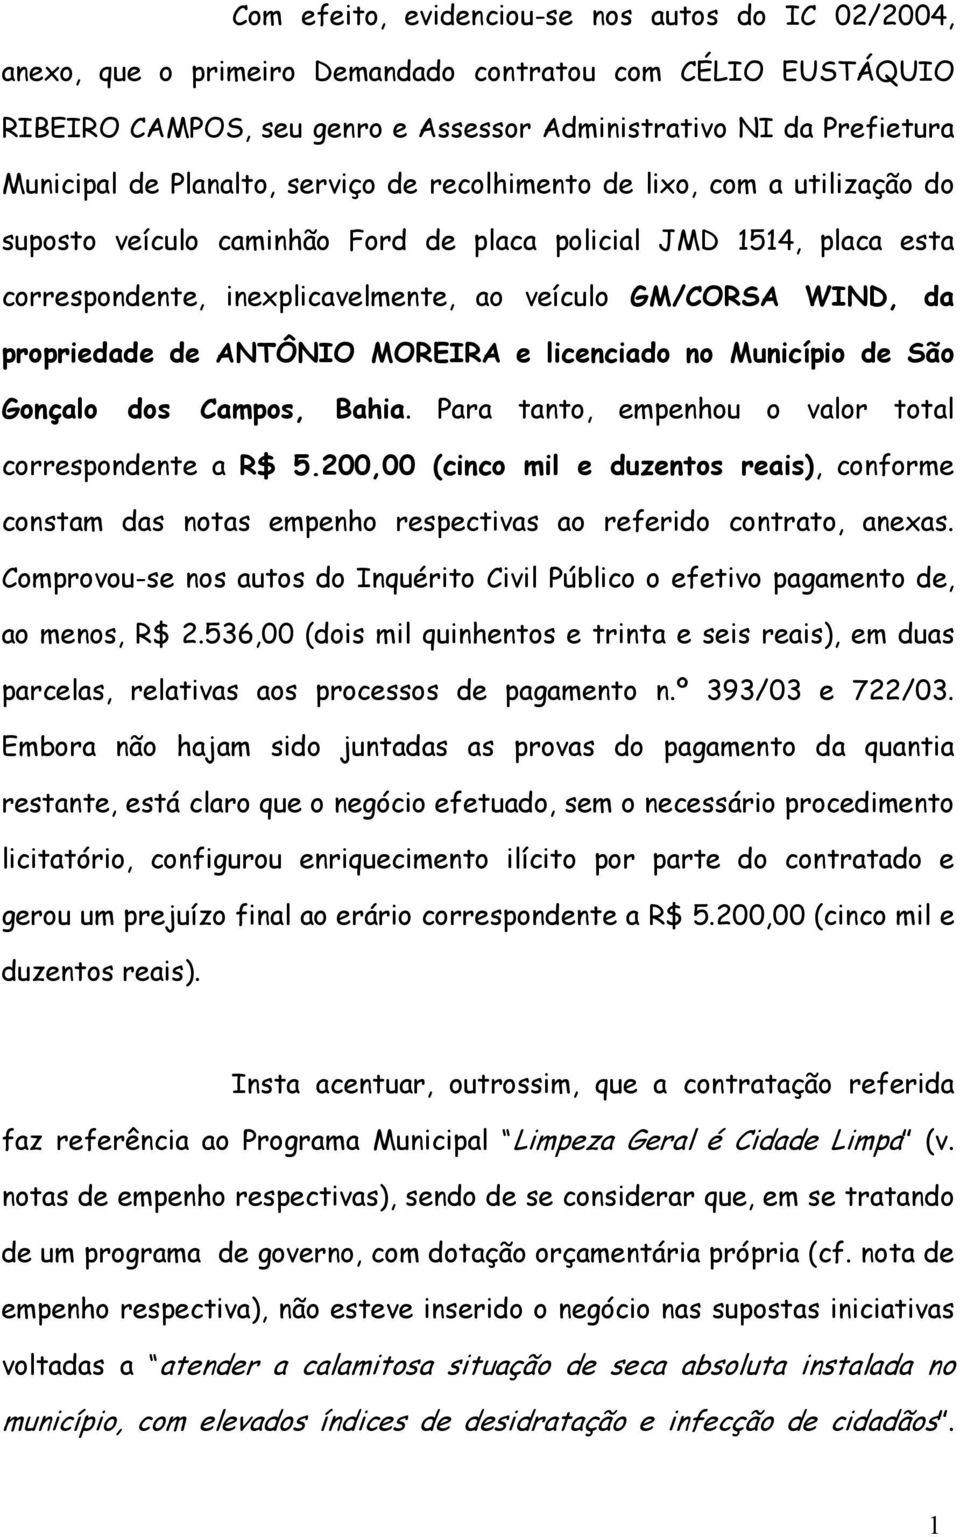 propriedade de ANTÔNIO MOREIRA e licenciado no Município de São Gonçalo dos Campos, Bahia. Para tanto, empenhou o valor total correspondente a R$ 5.